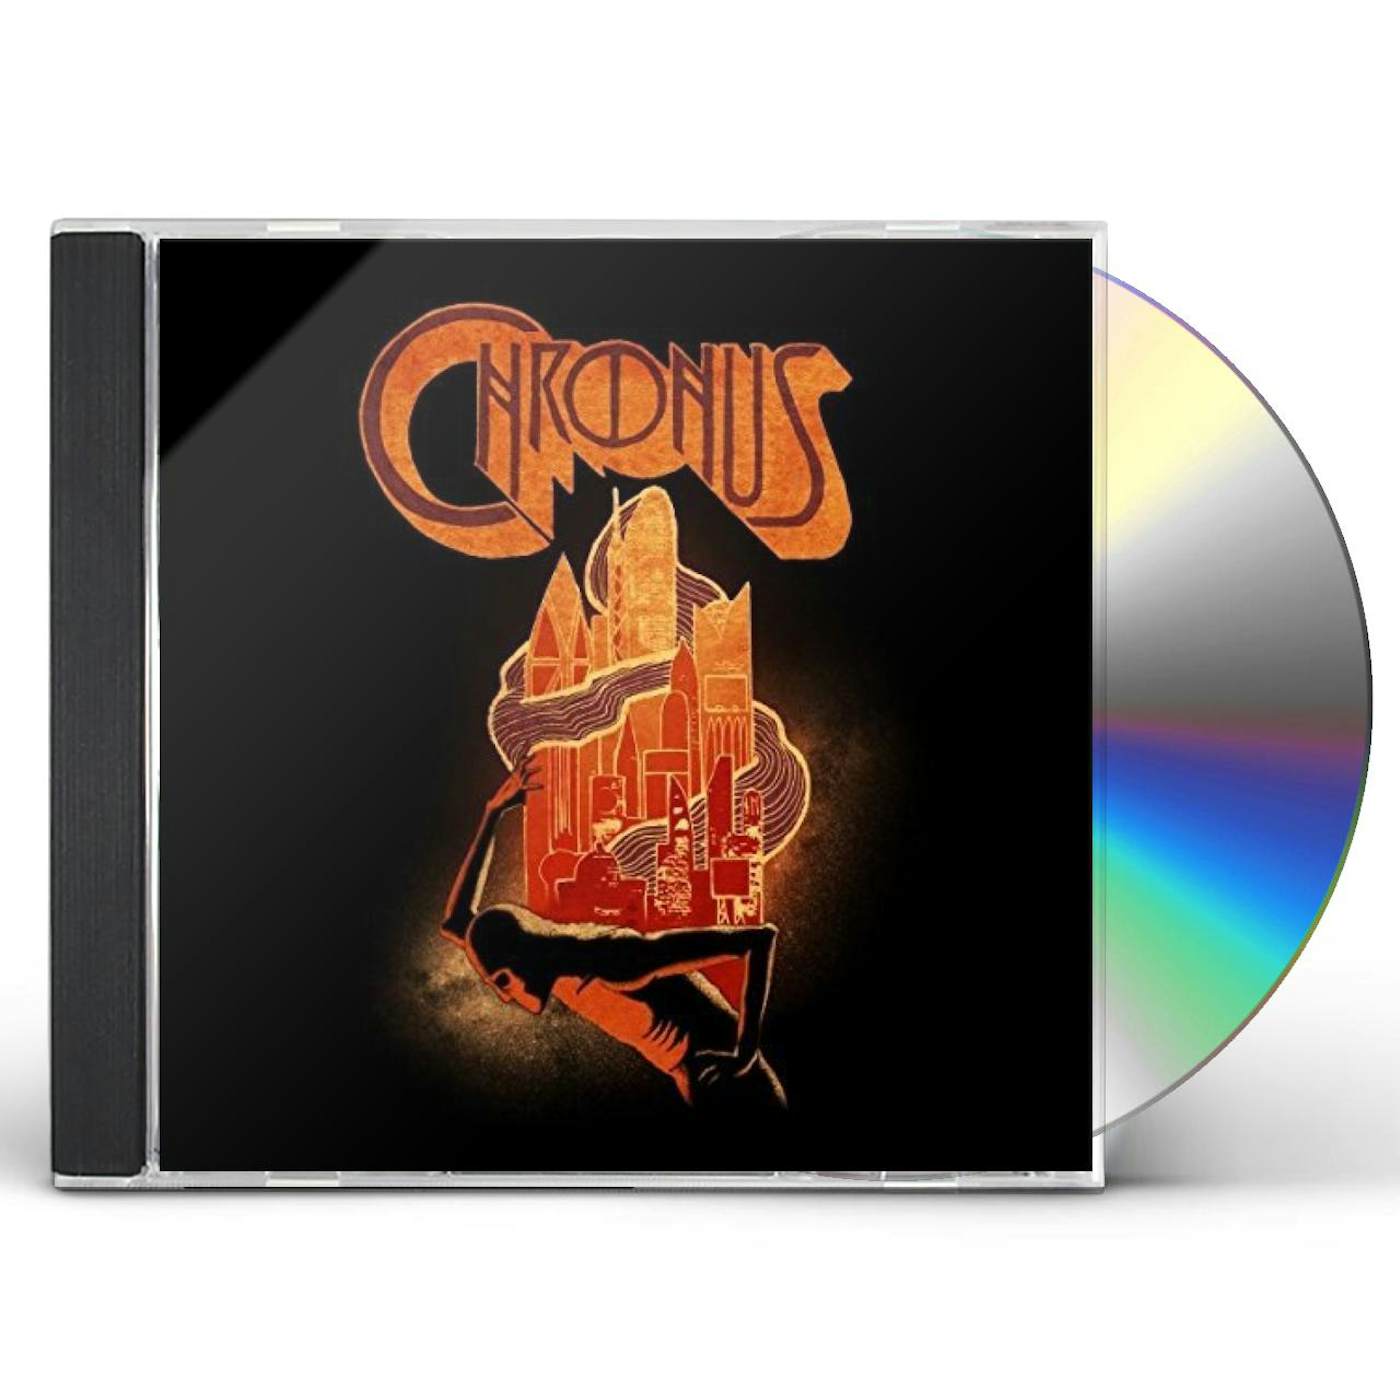 Chronus - Chronus CD